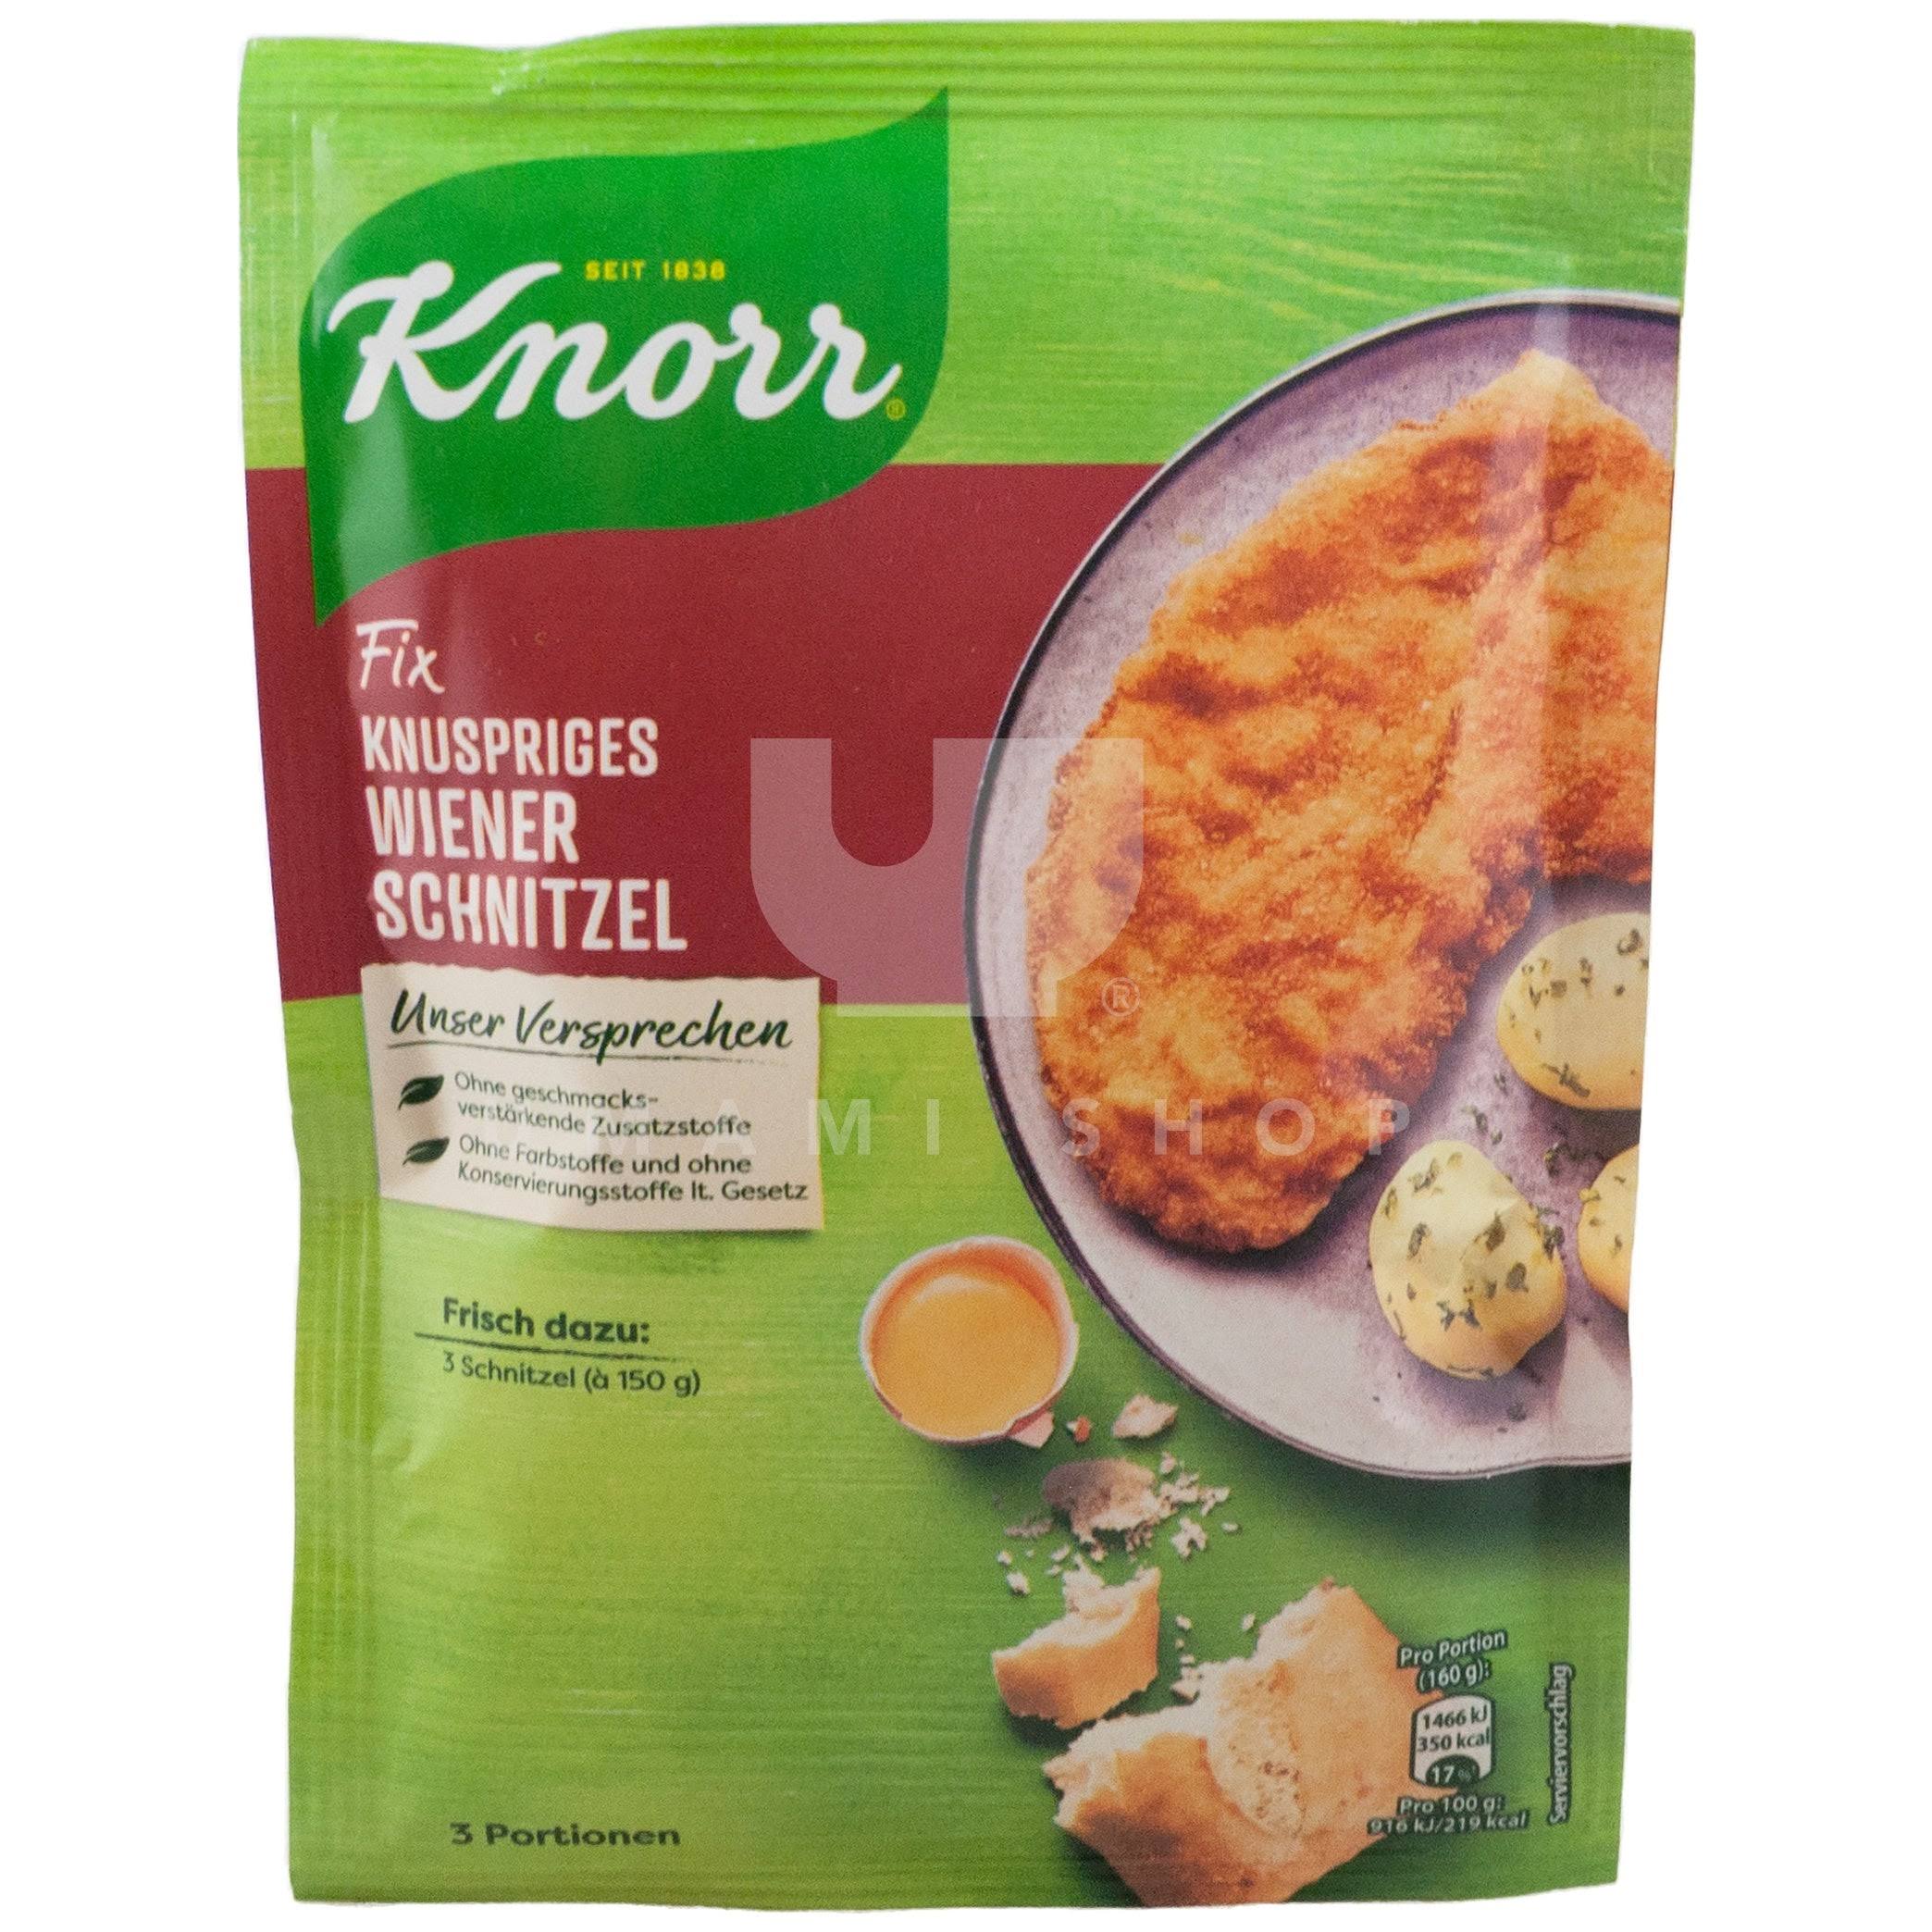 Knorr Knuspriges Wiener Schnitzel 90g